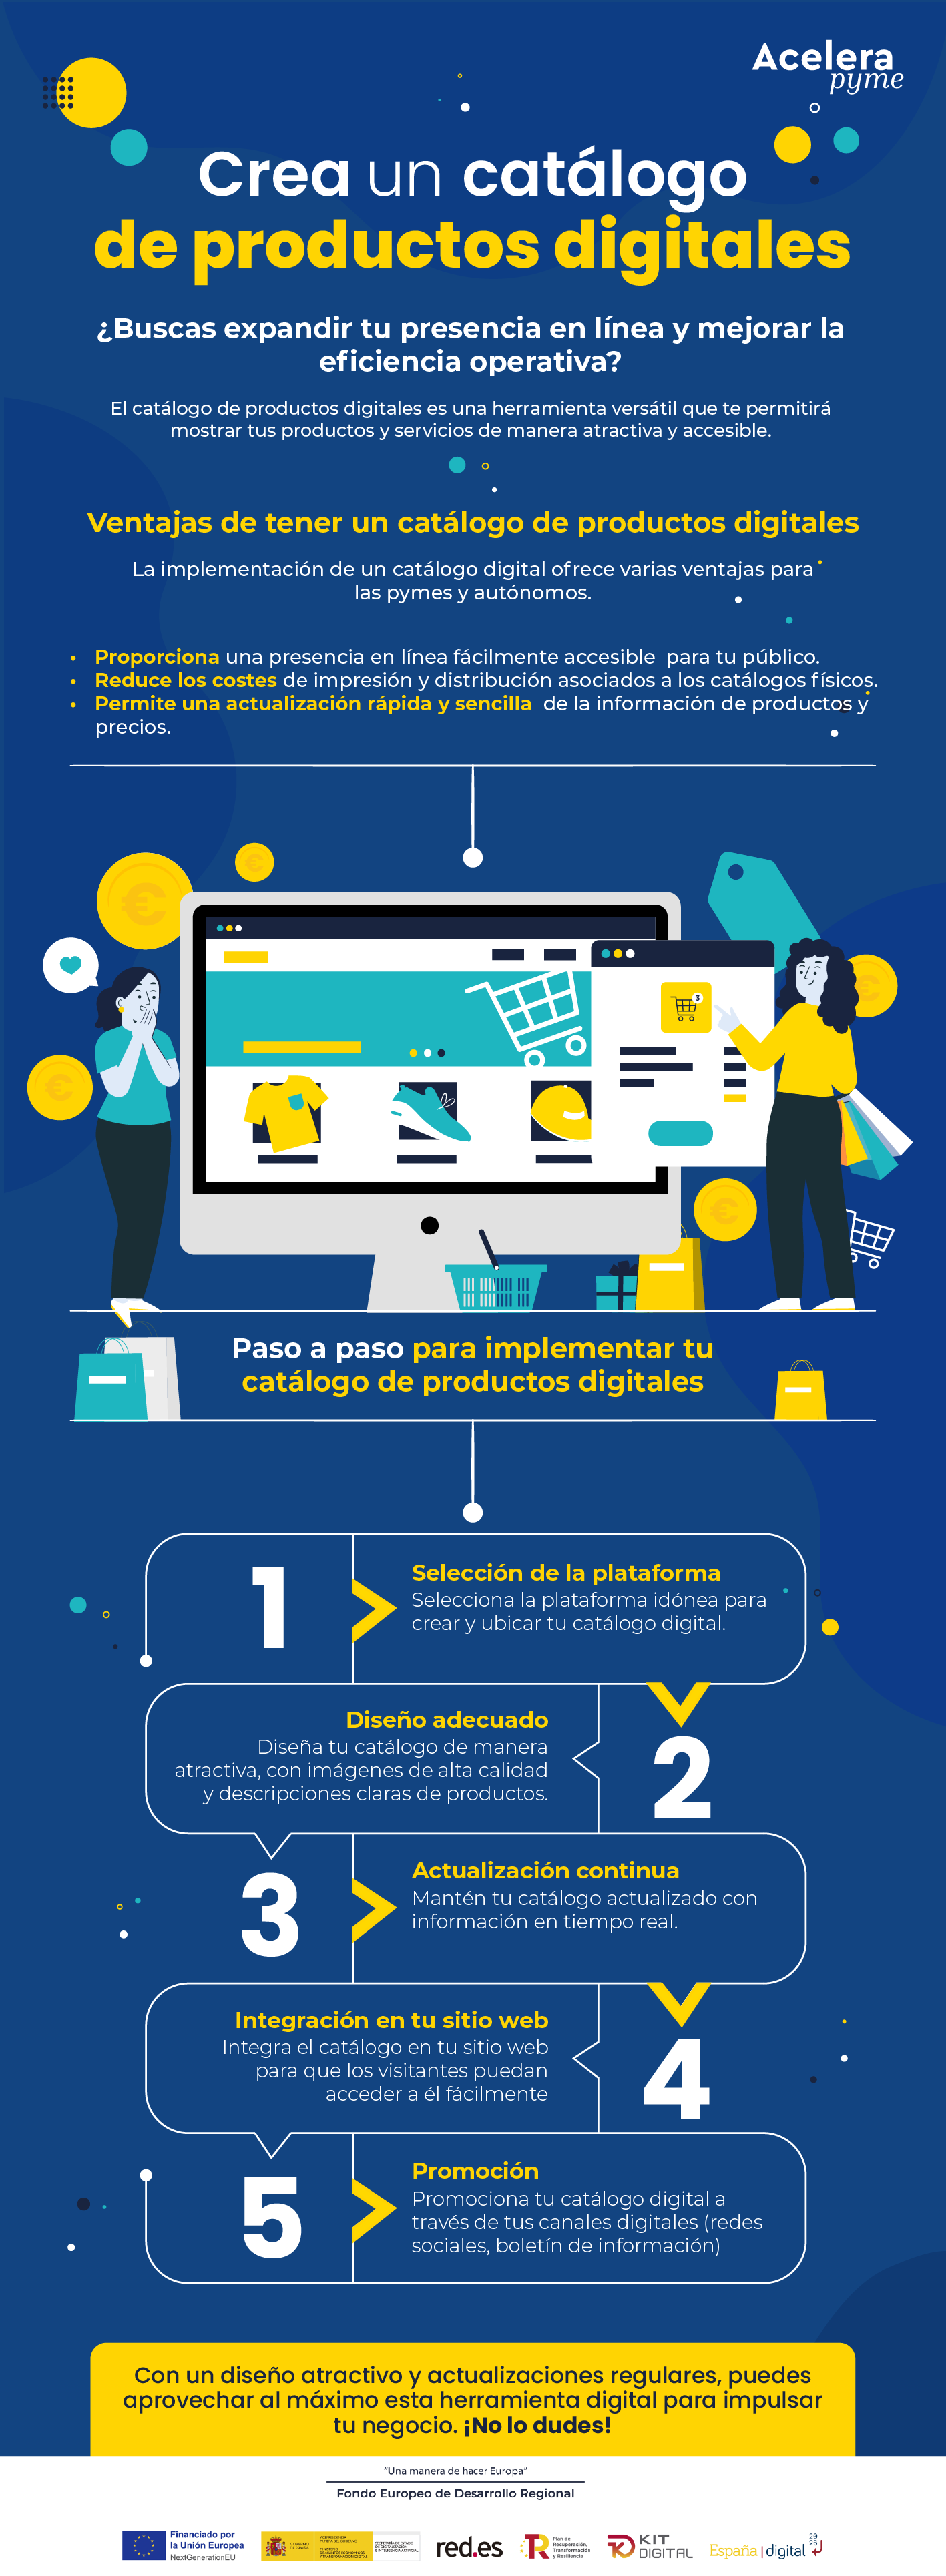 ¿Conoces las ventajas de tener un catálogo de productos digitales?